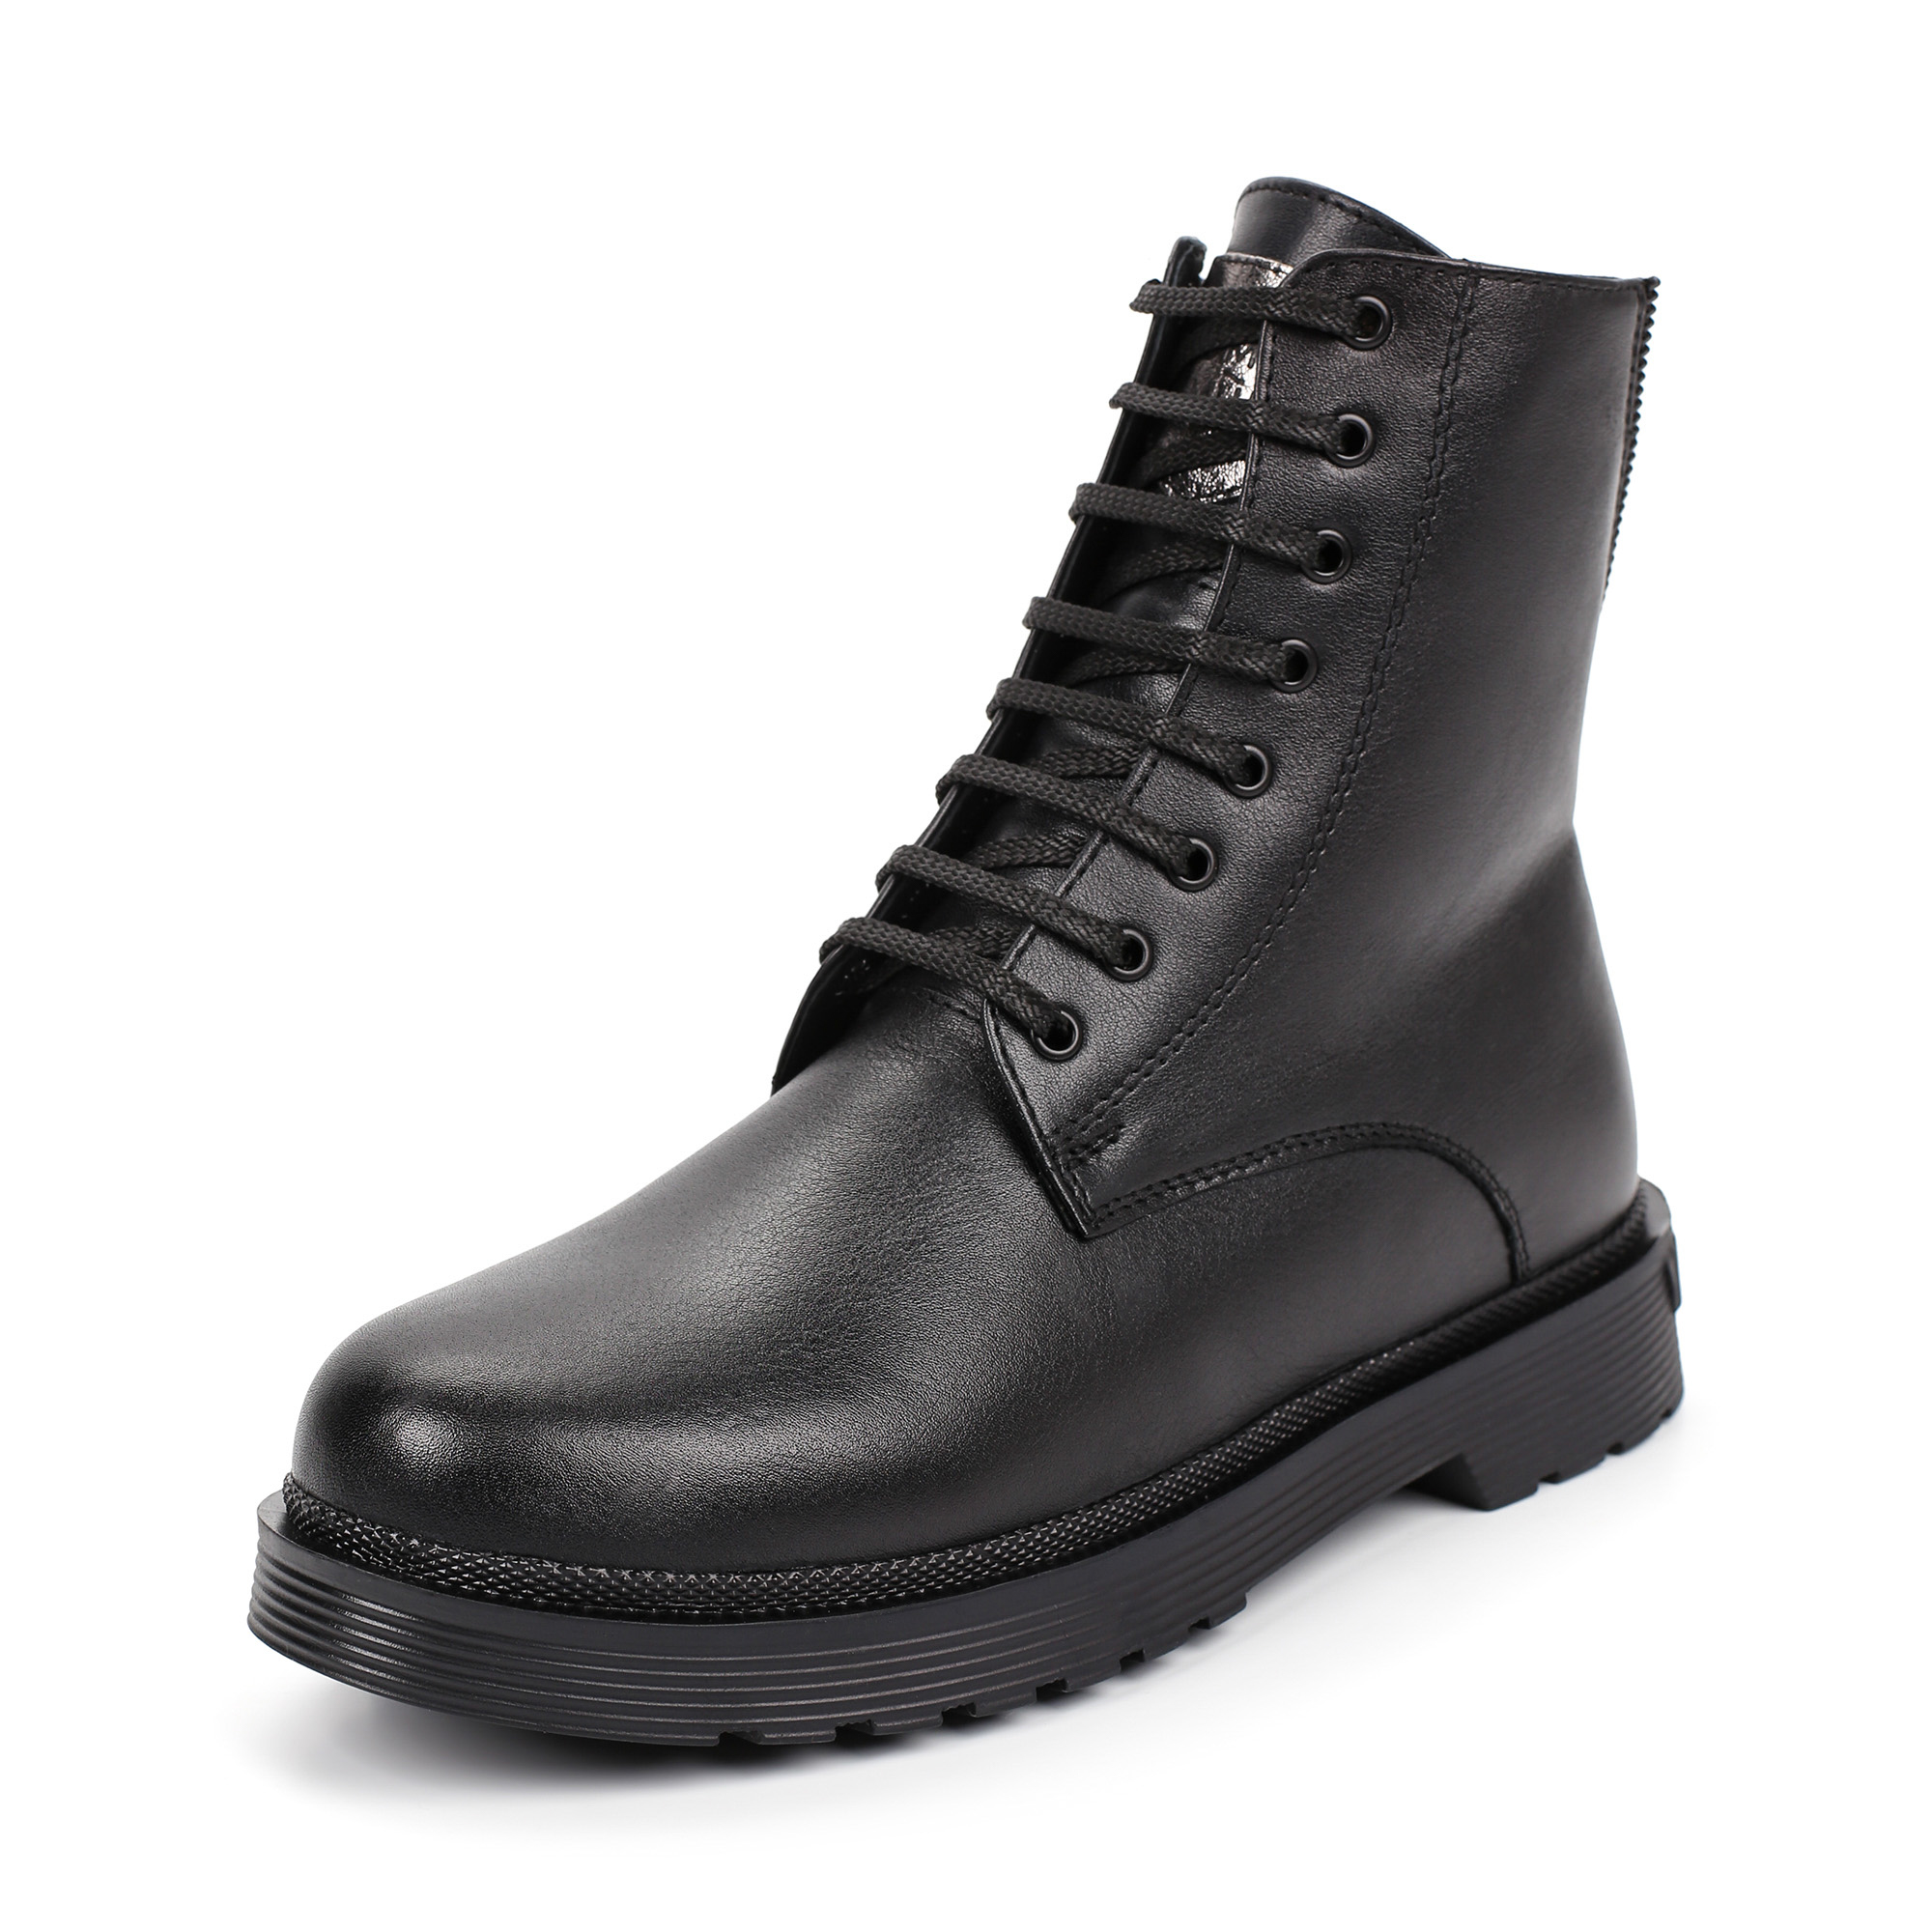 Ботинки Thomas Munz 302-004A-5102, цвет черный, размер 36 - фото 2